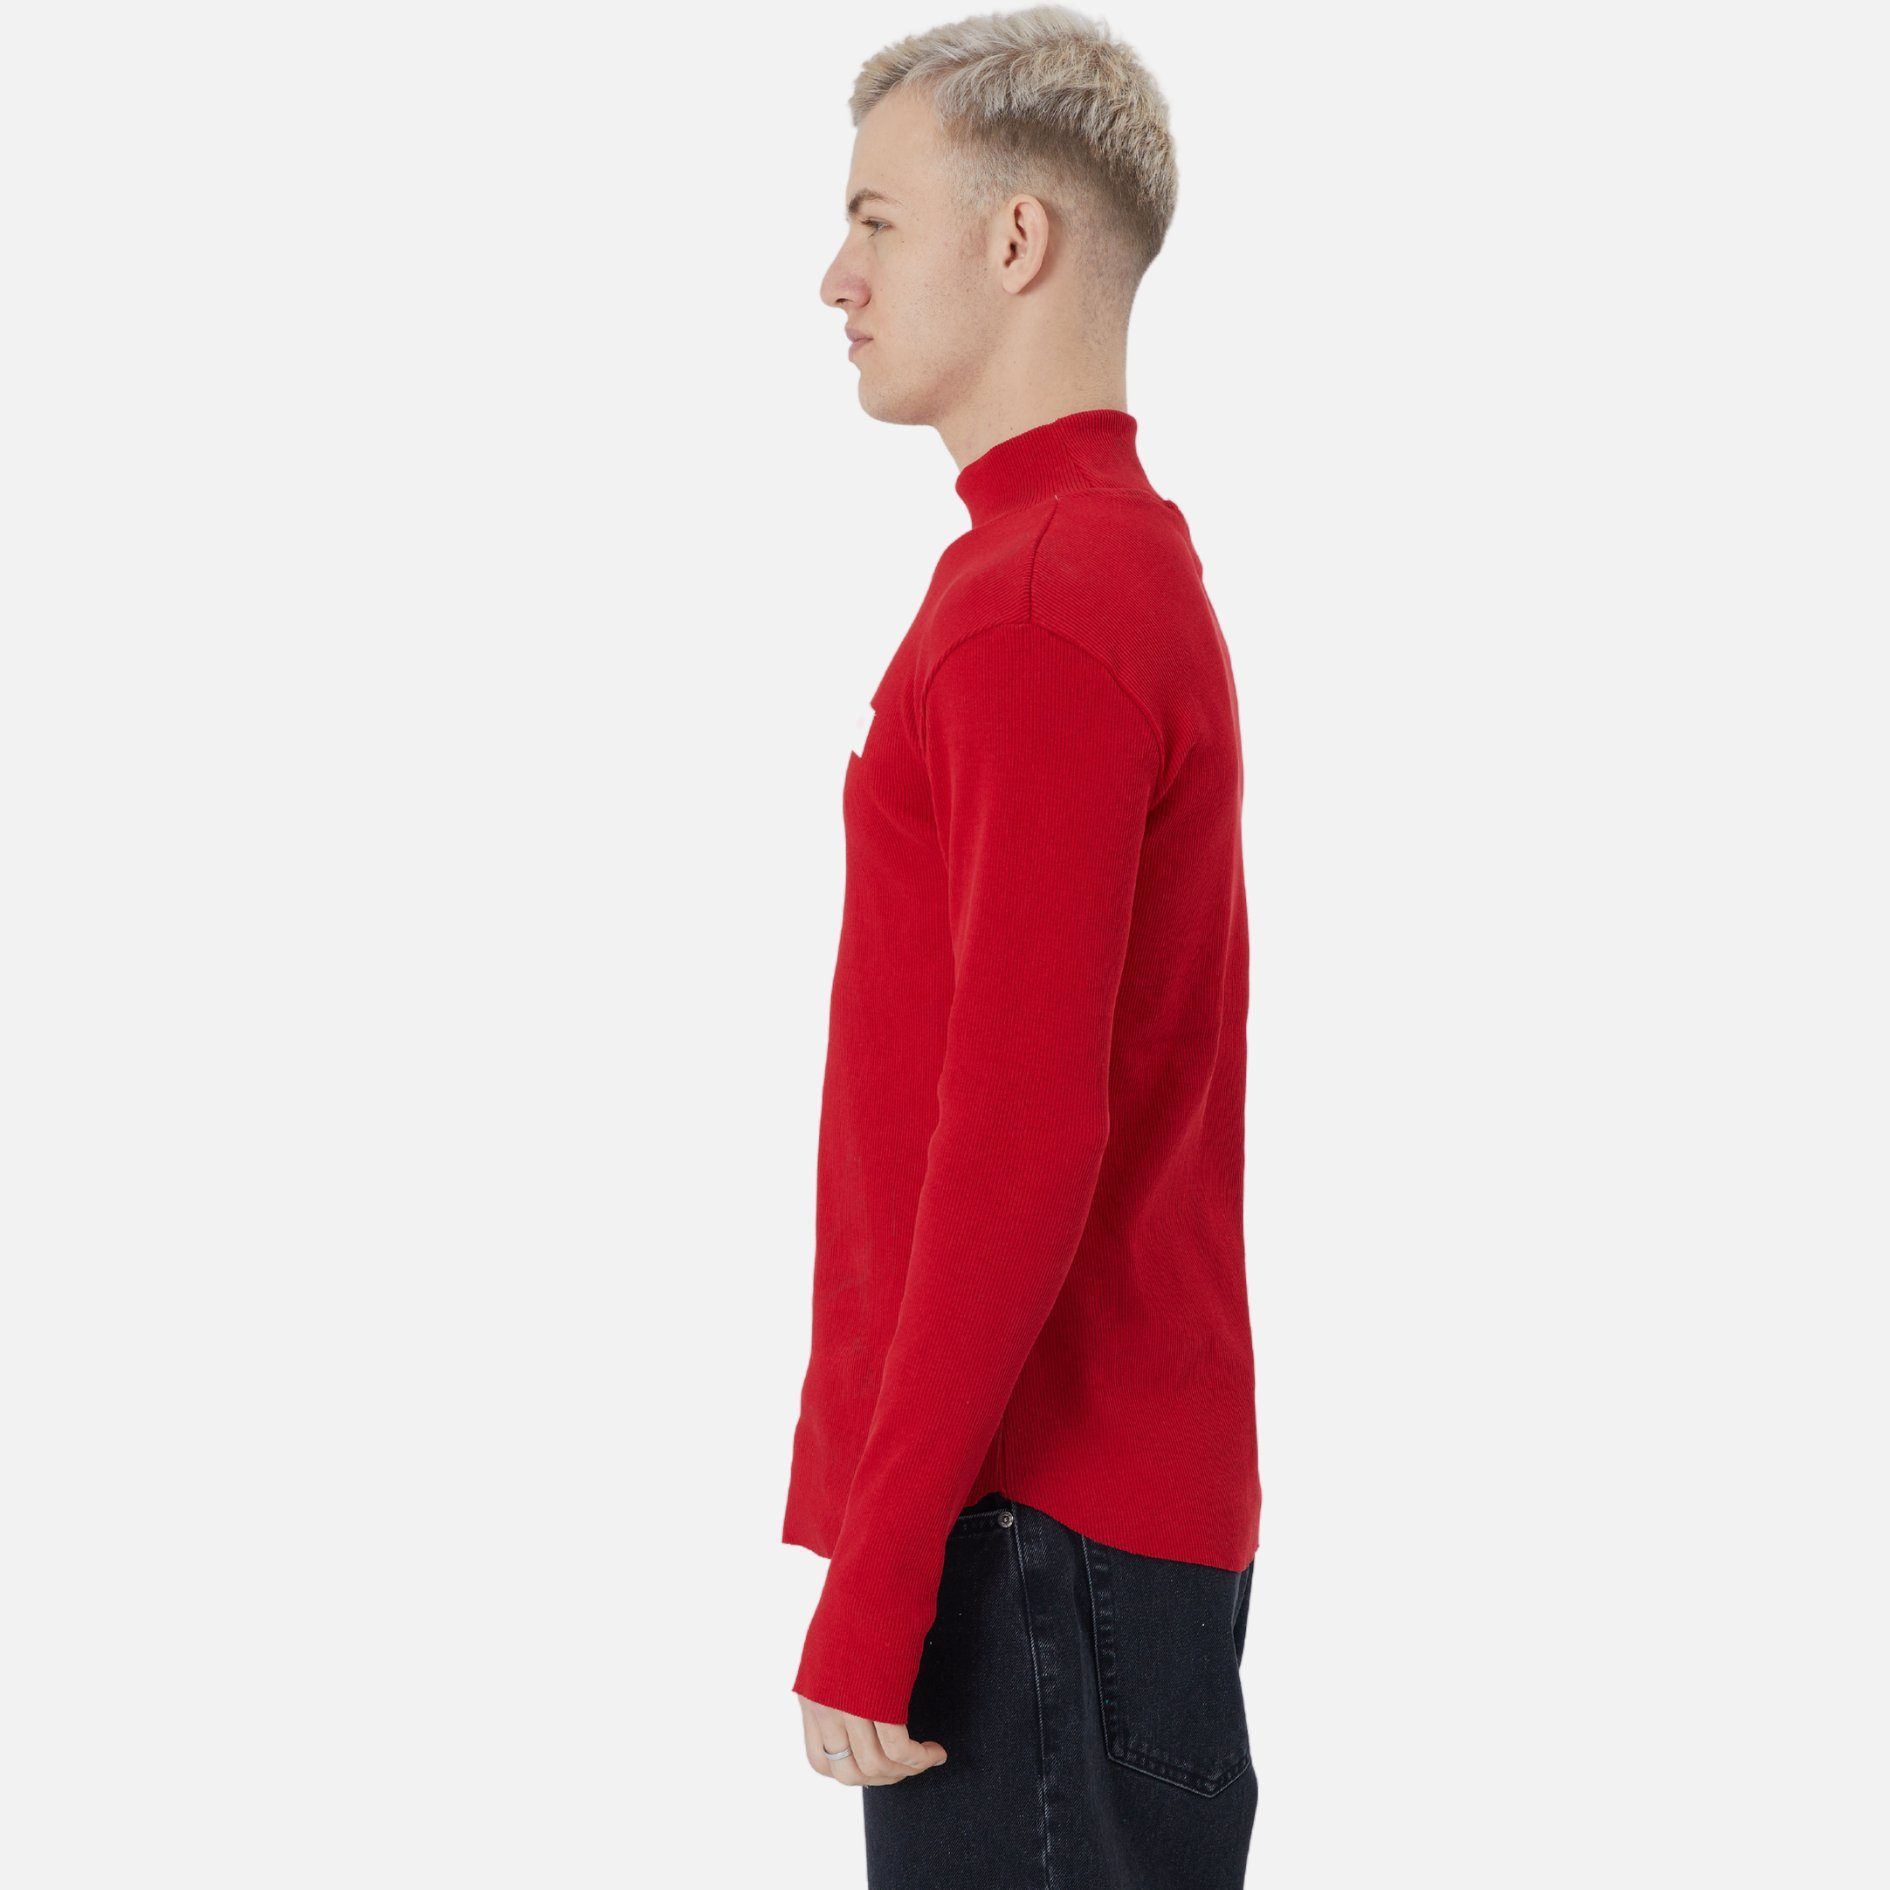 Rundhals Casuals Sweatshirt COFI Rot Regular Sweatshirt Fit Pullover Herren